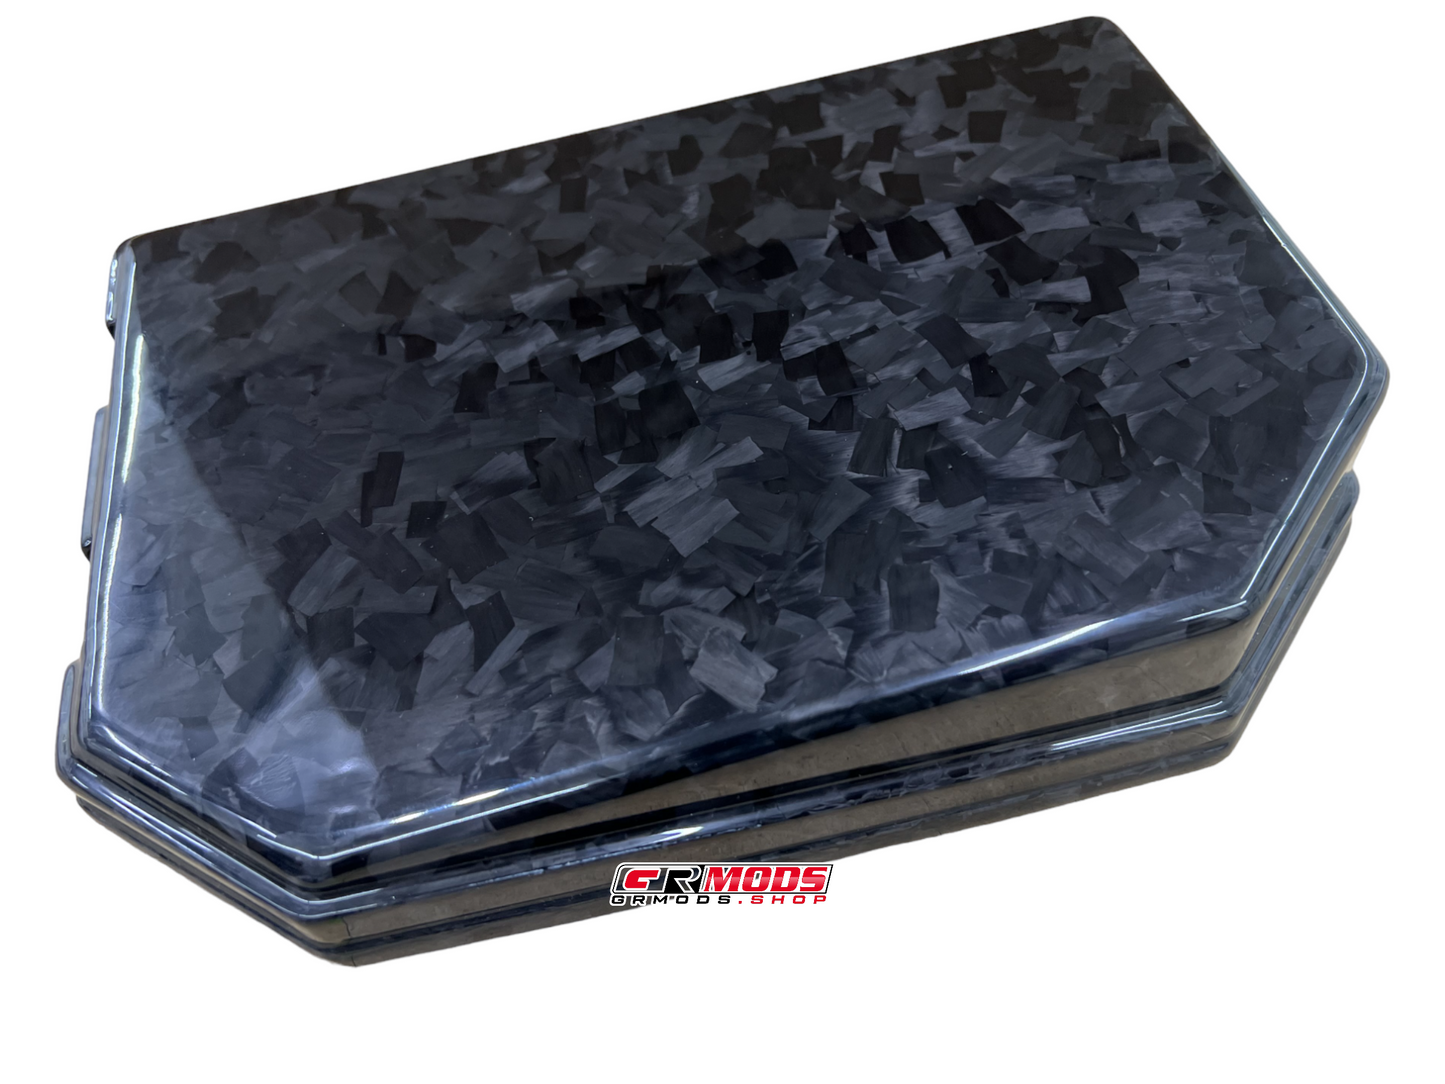 GRMODS Carbon Fiber Fuse Box Cover